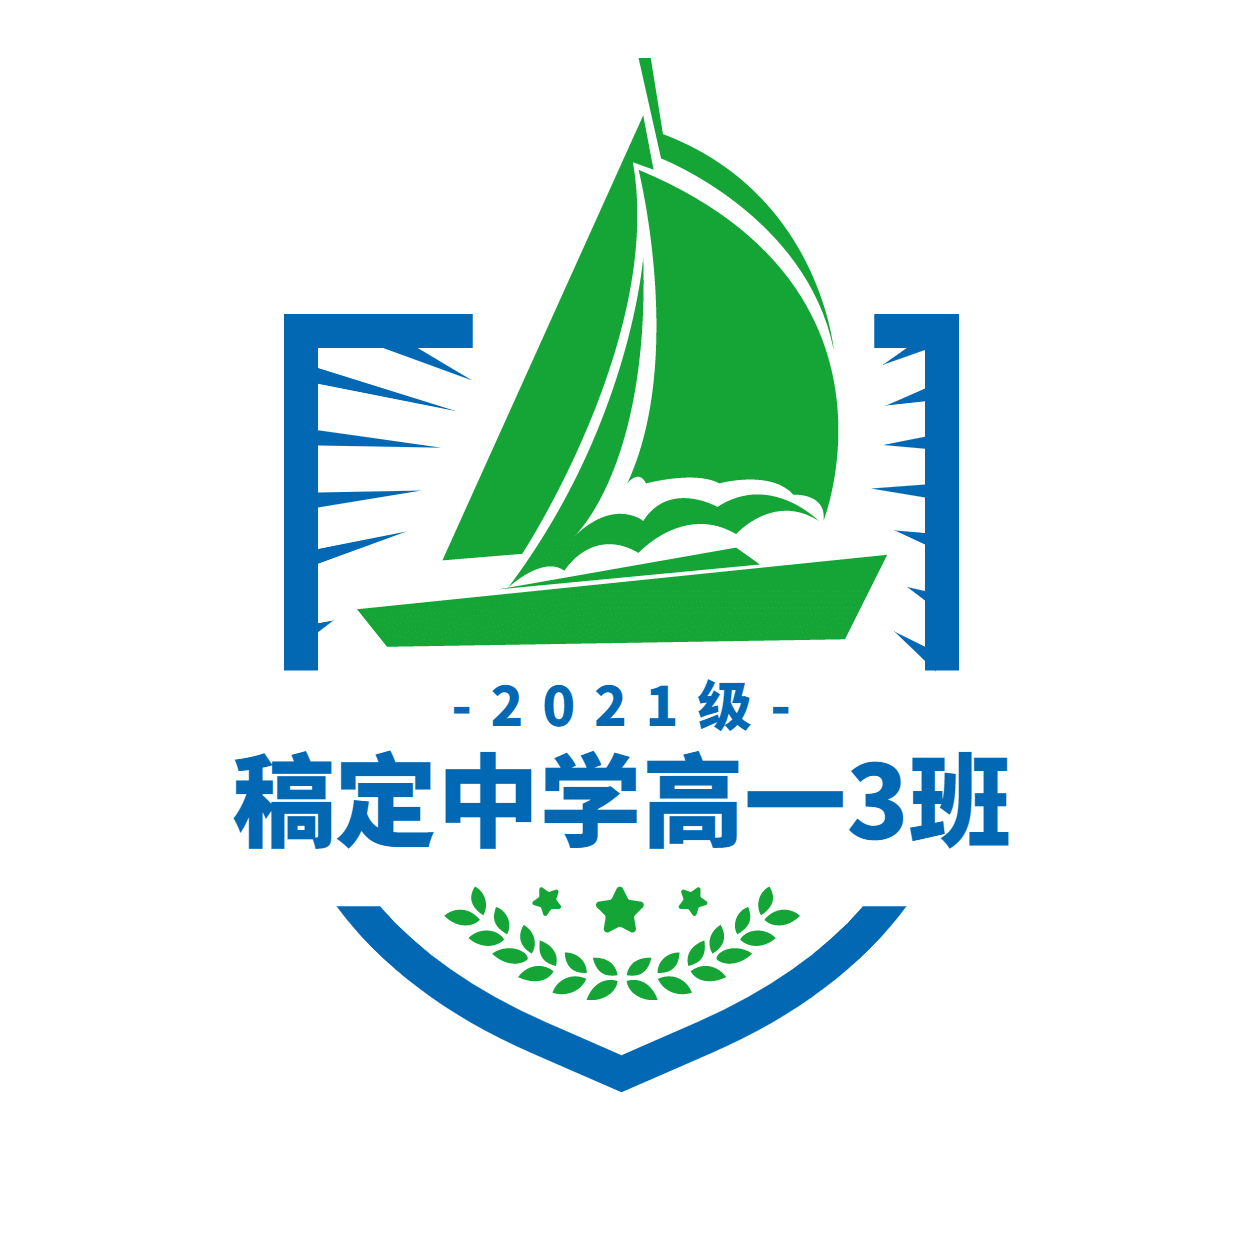 班级班徽校徽帆船头像logo